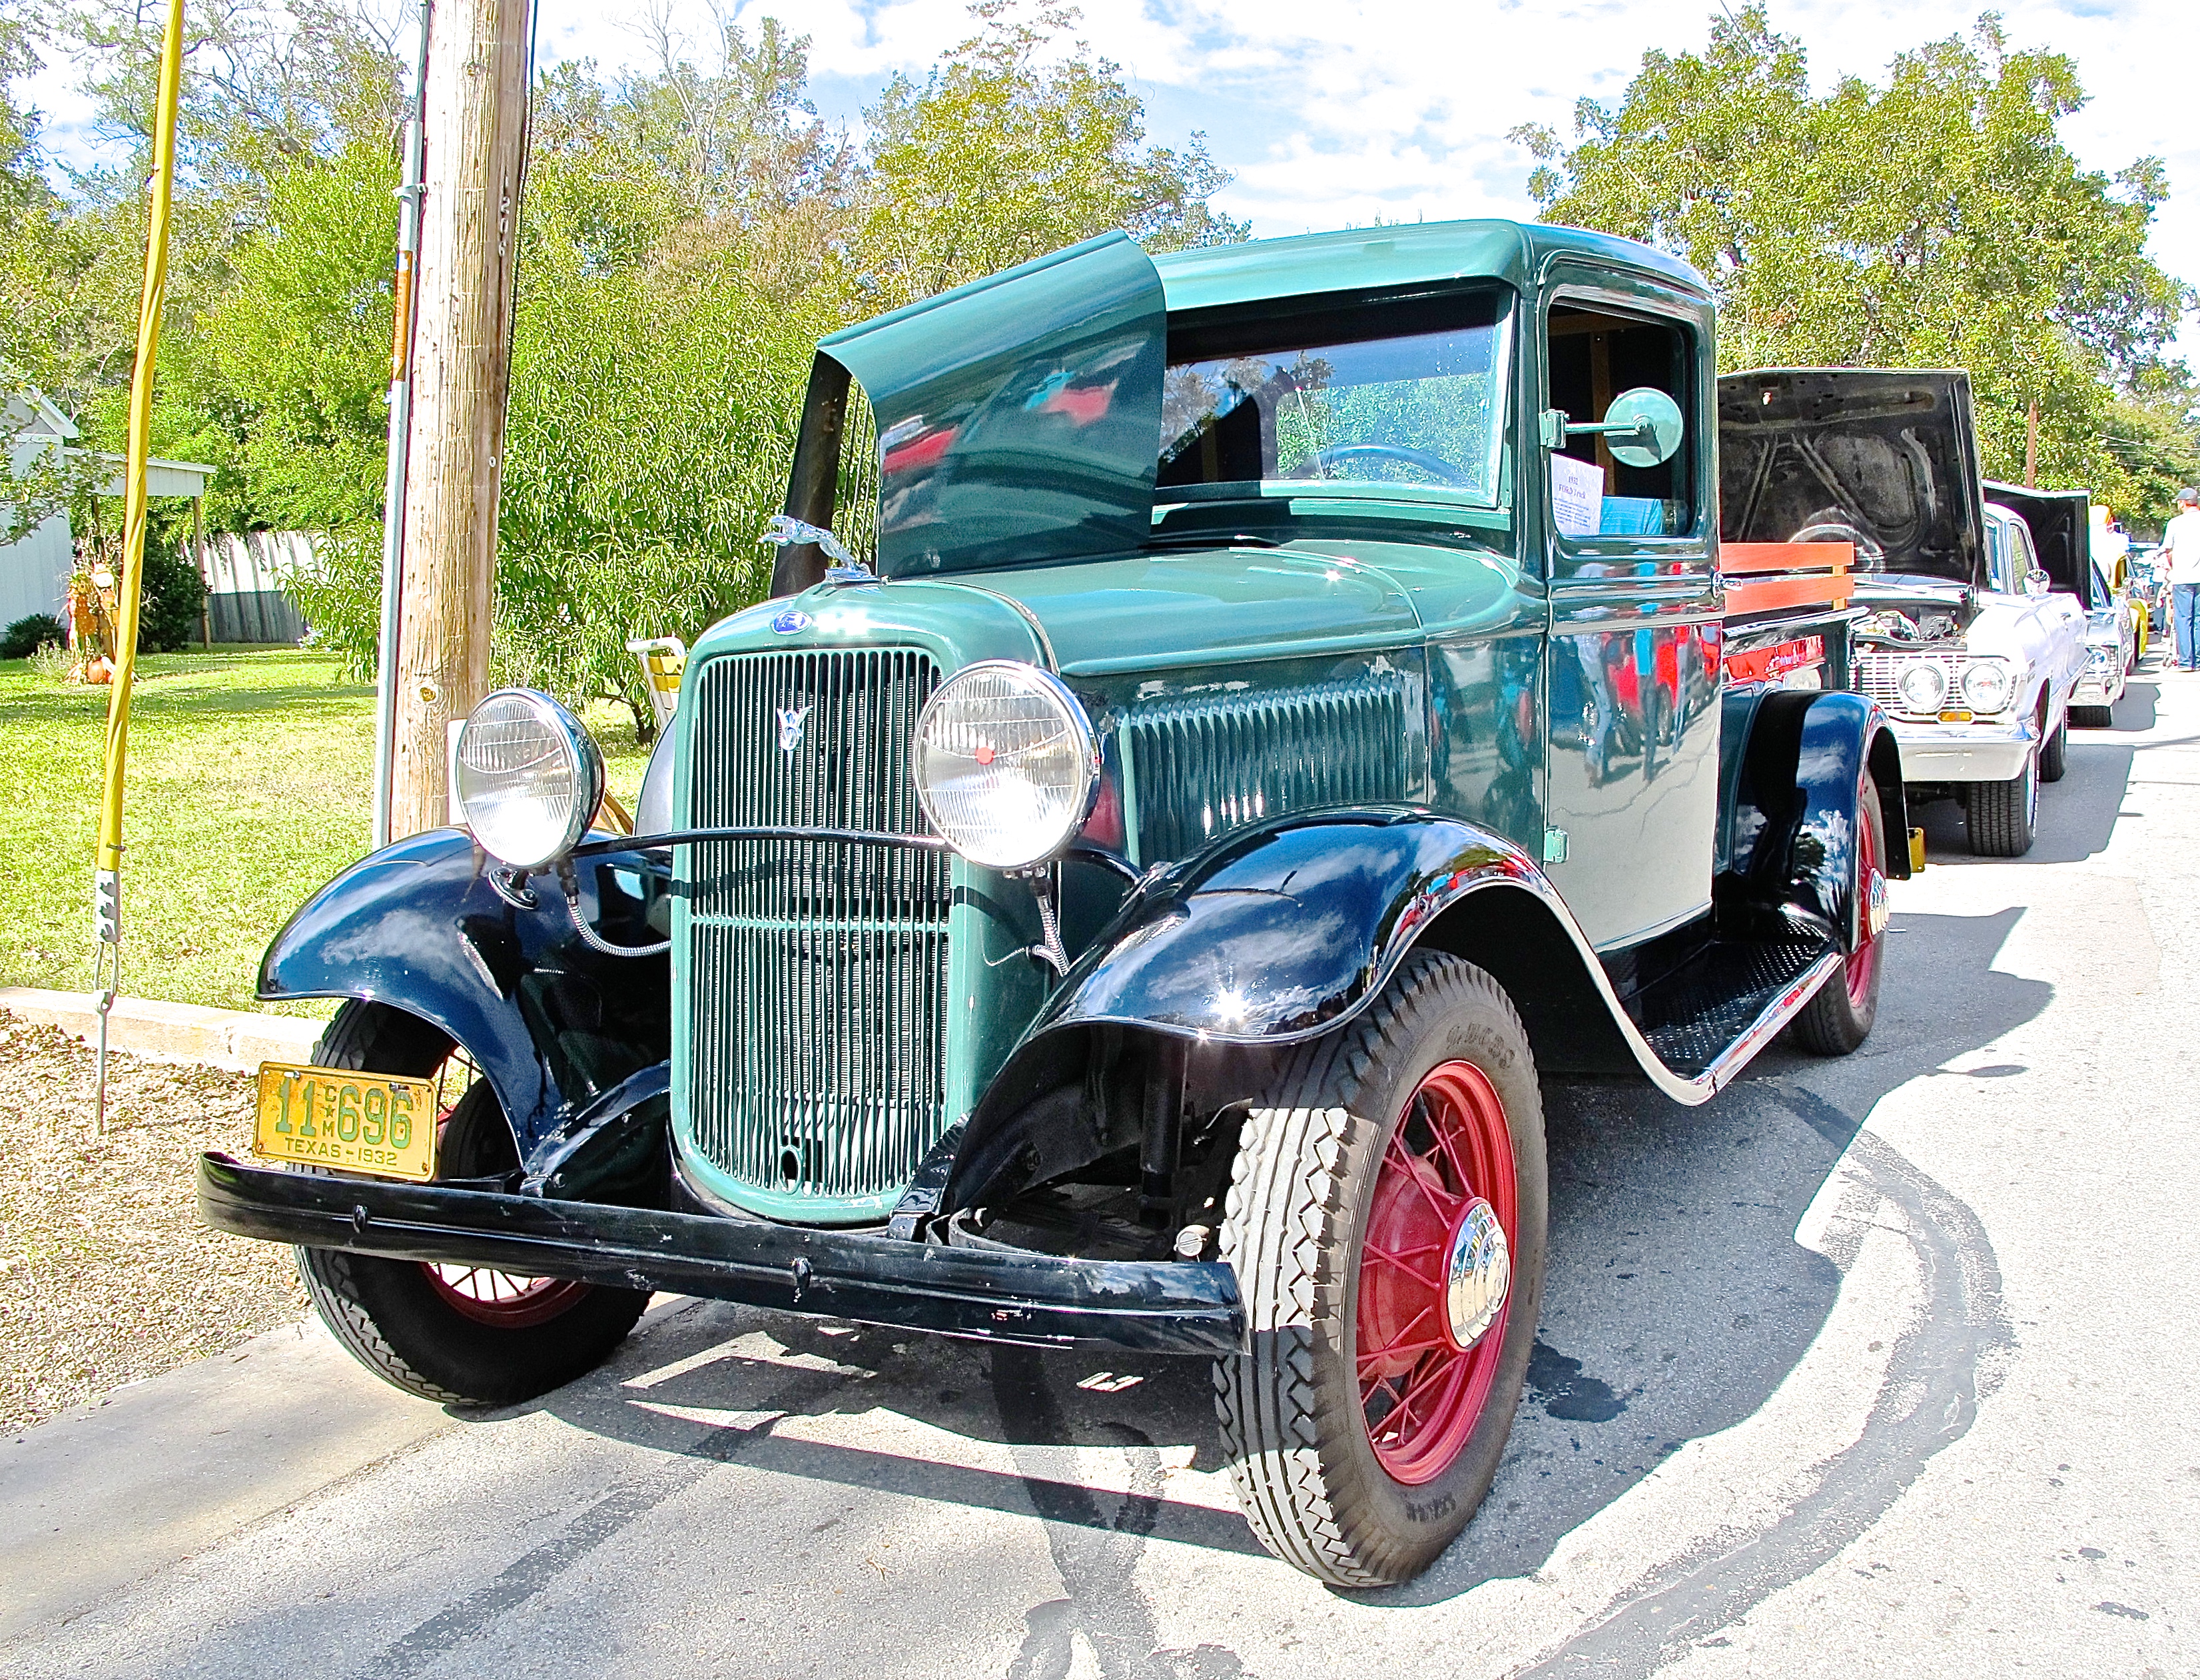 1932 Ford Pickup at Bastrop TX car show